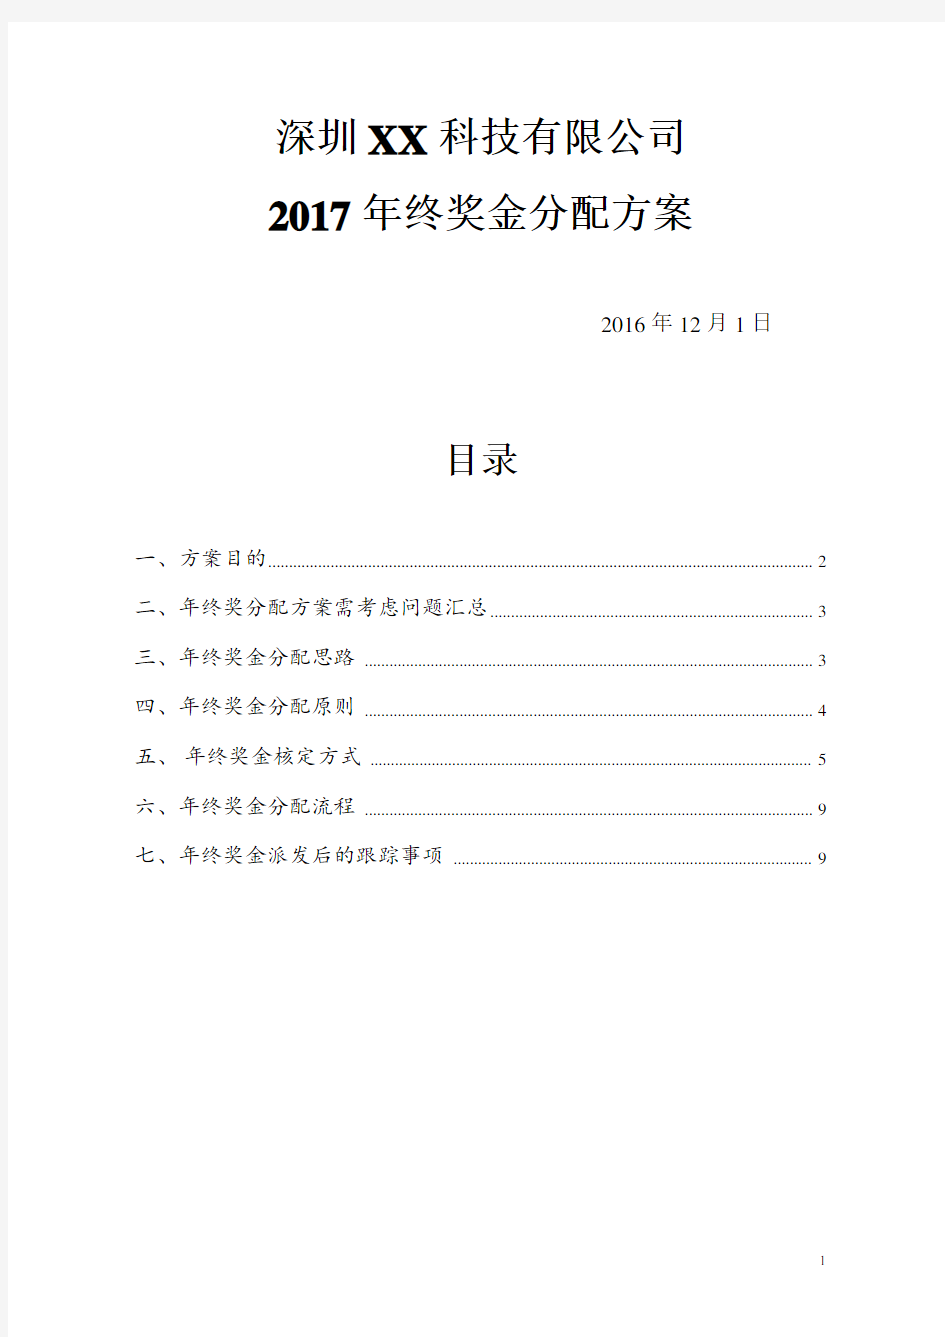 2017年年终奖金分配方案(落实详细版)